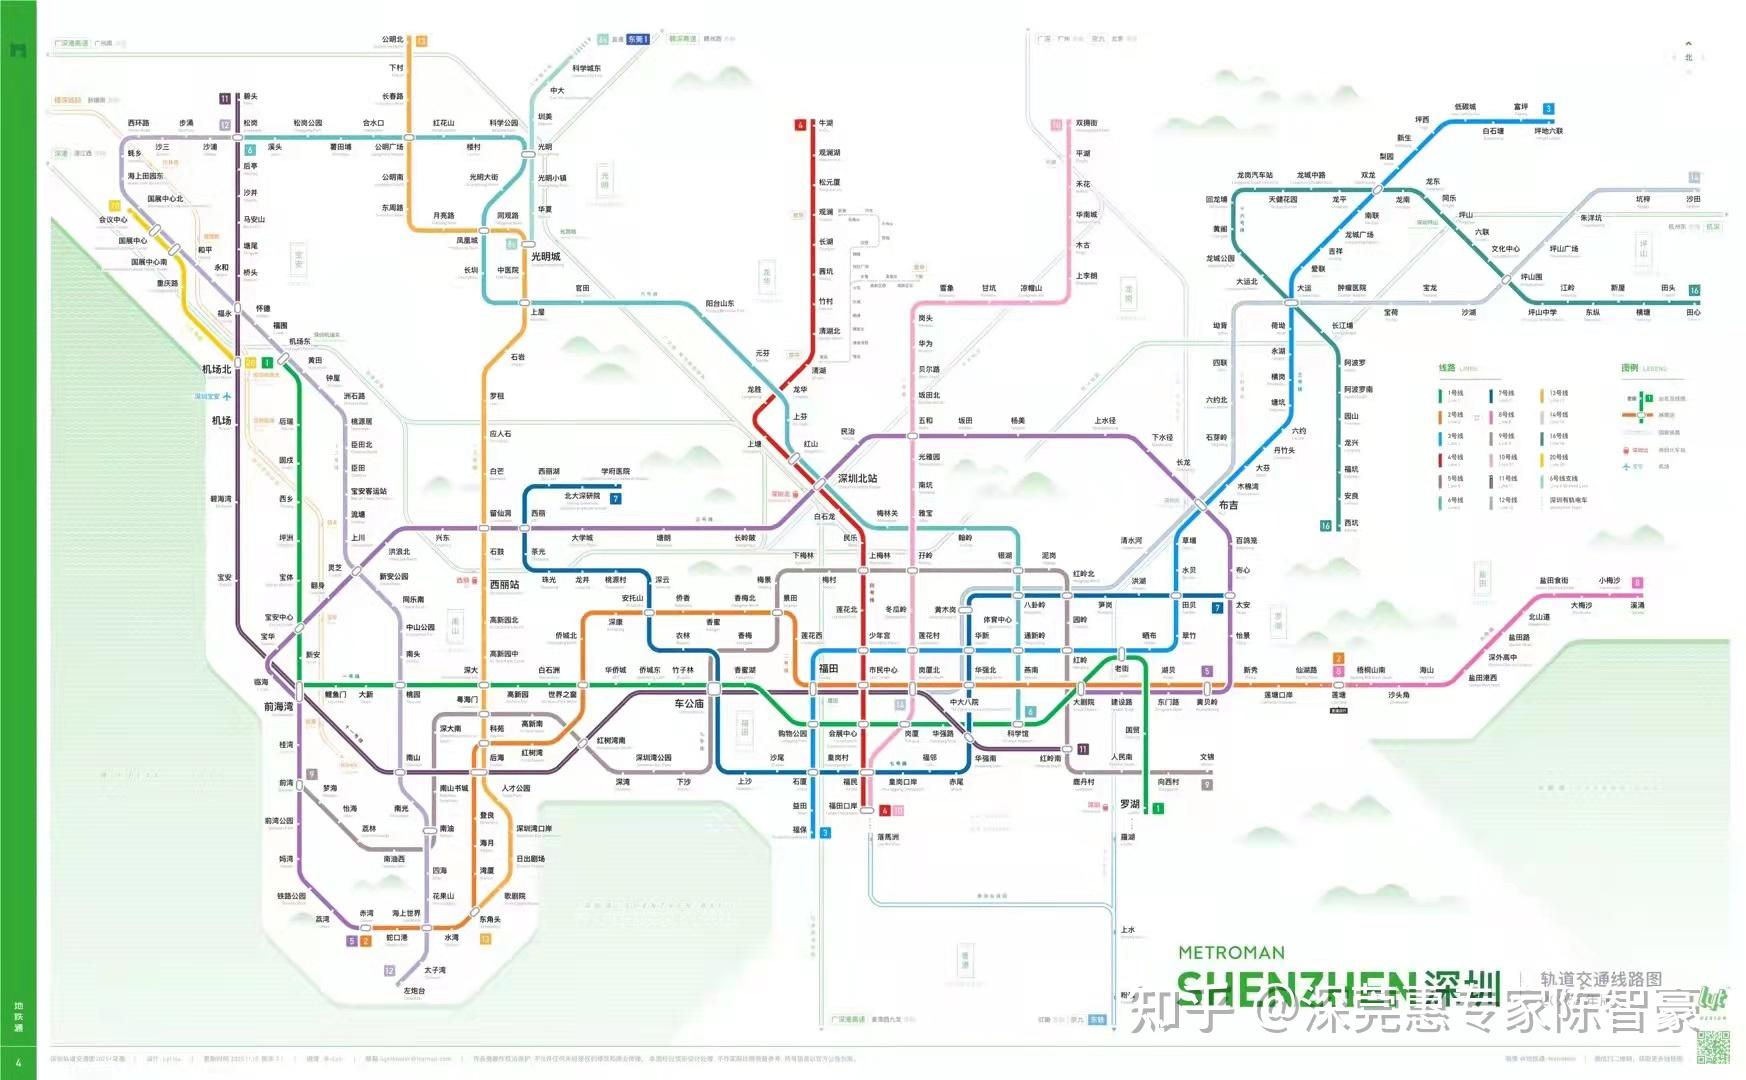 深圳地铁规划2035年(详细版)673号线东延:预计2025年通车,将有效